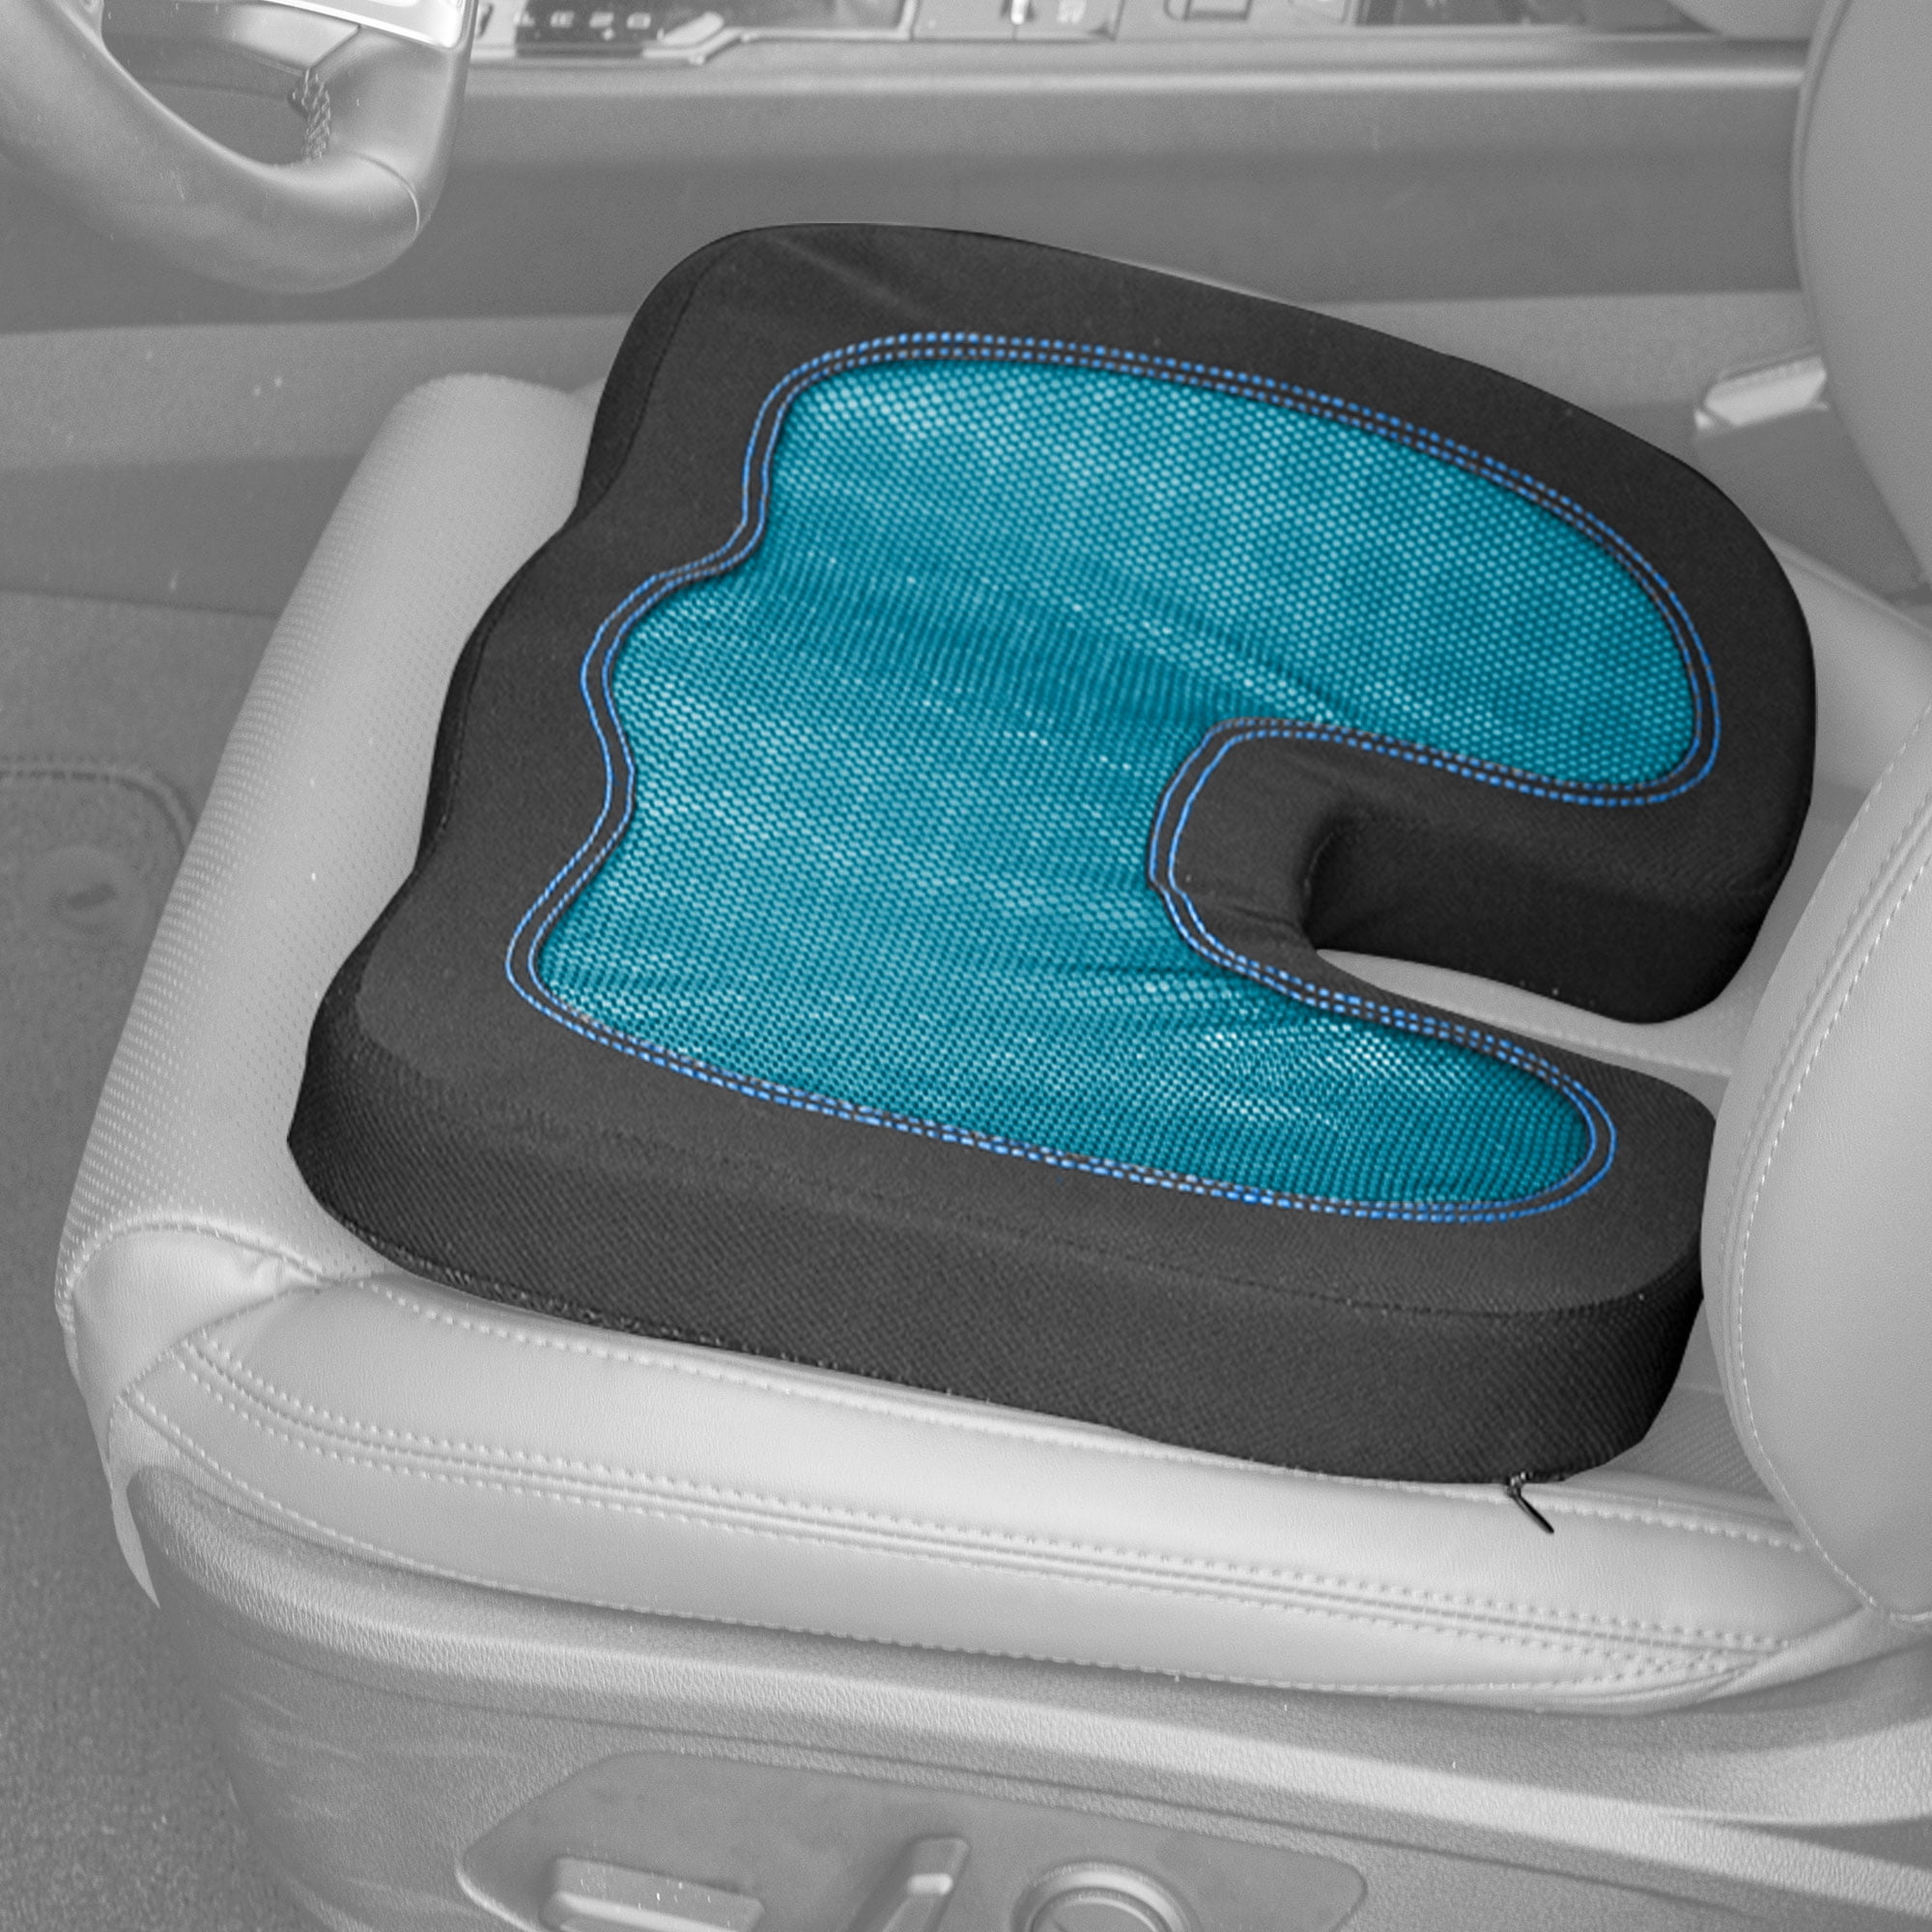 Forsite Health Deluxe Memory Foam Swivel Seat FH1021 